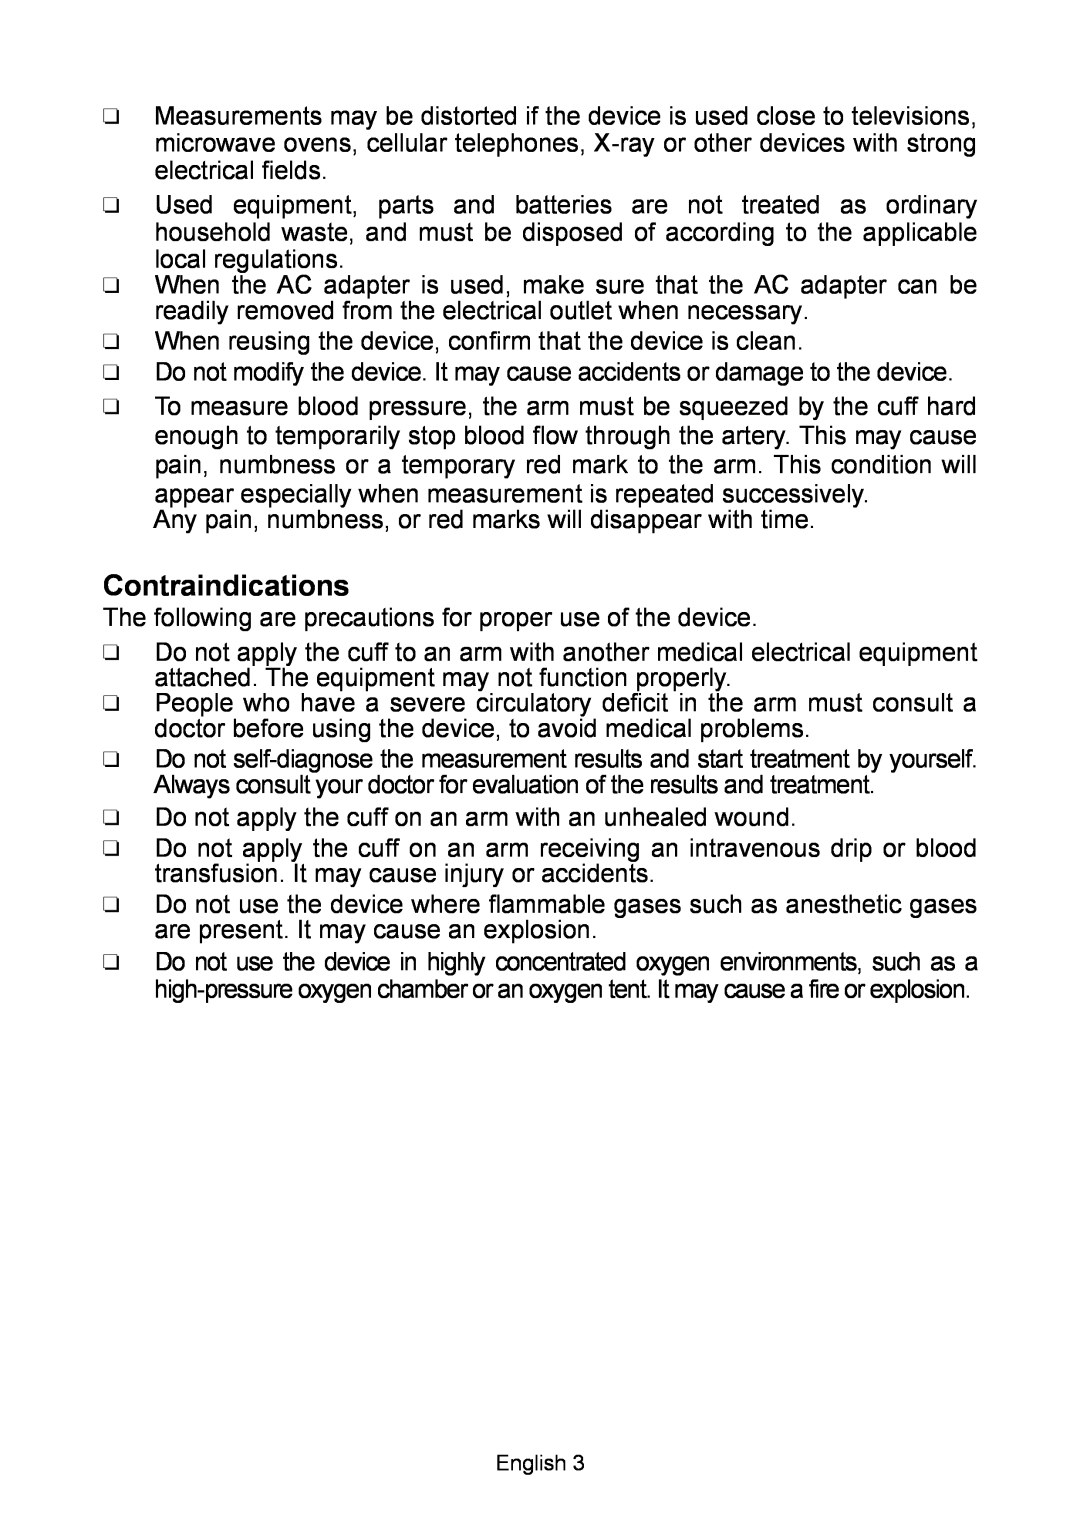 A&D BT-Ci, UA-767 instruction manual Contraindications 